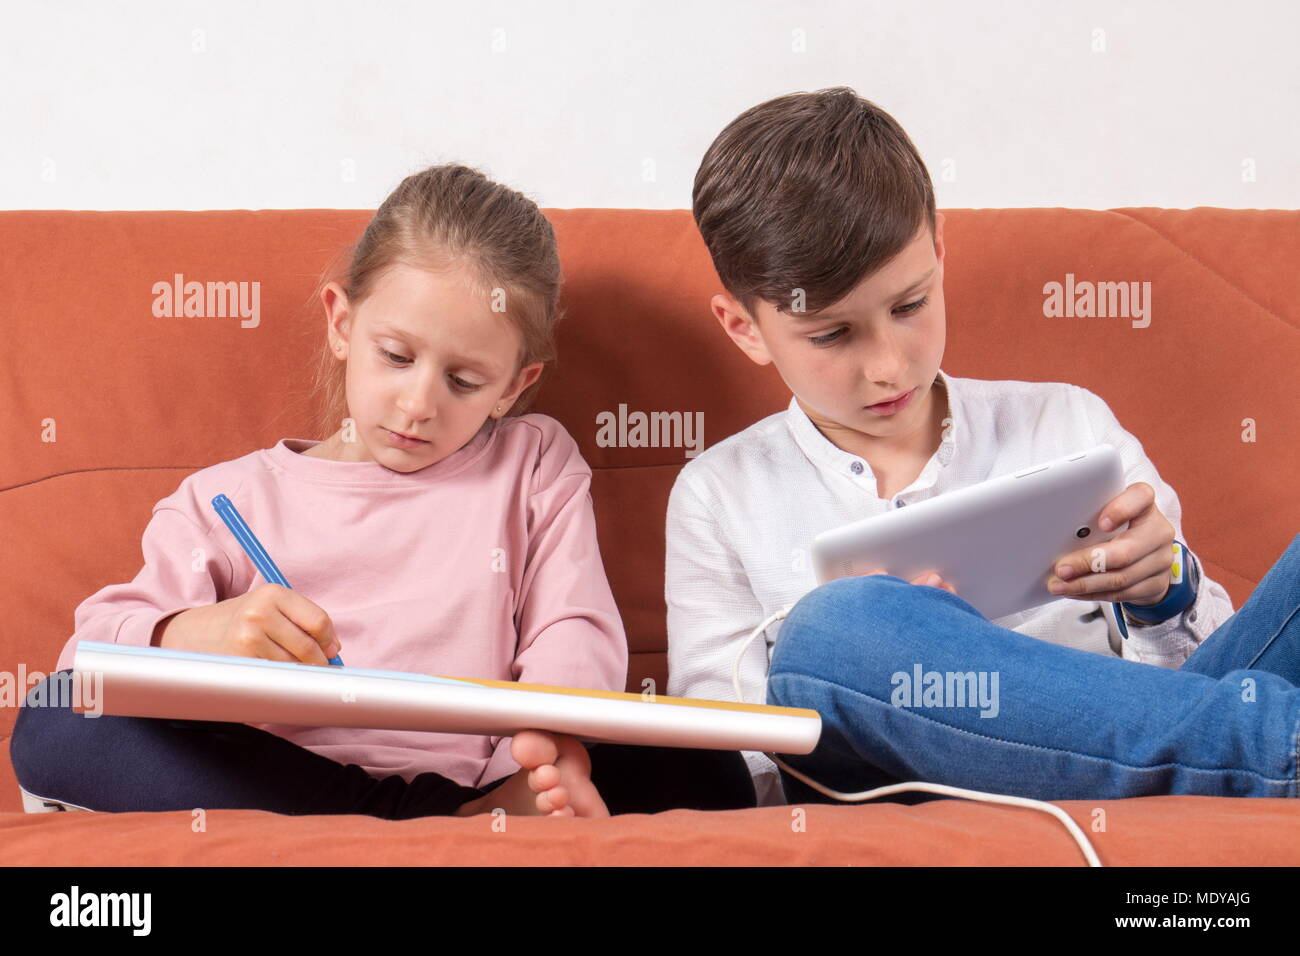 Deux enfants qui jouent, un avec le livre à colorier et les autres avec la tablette numérique Banque D'Images